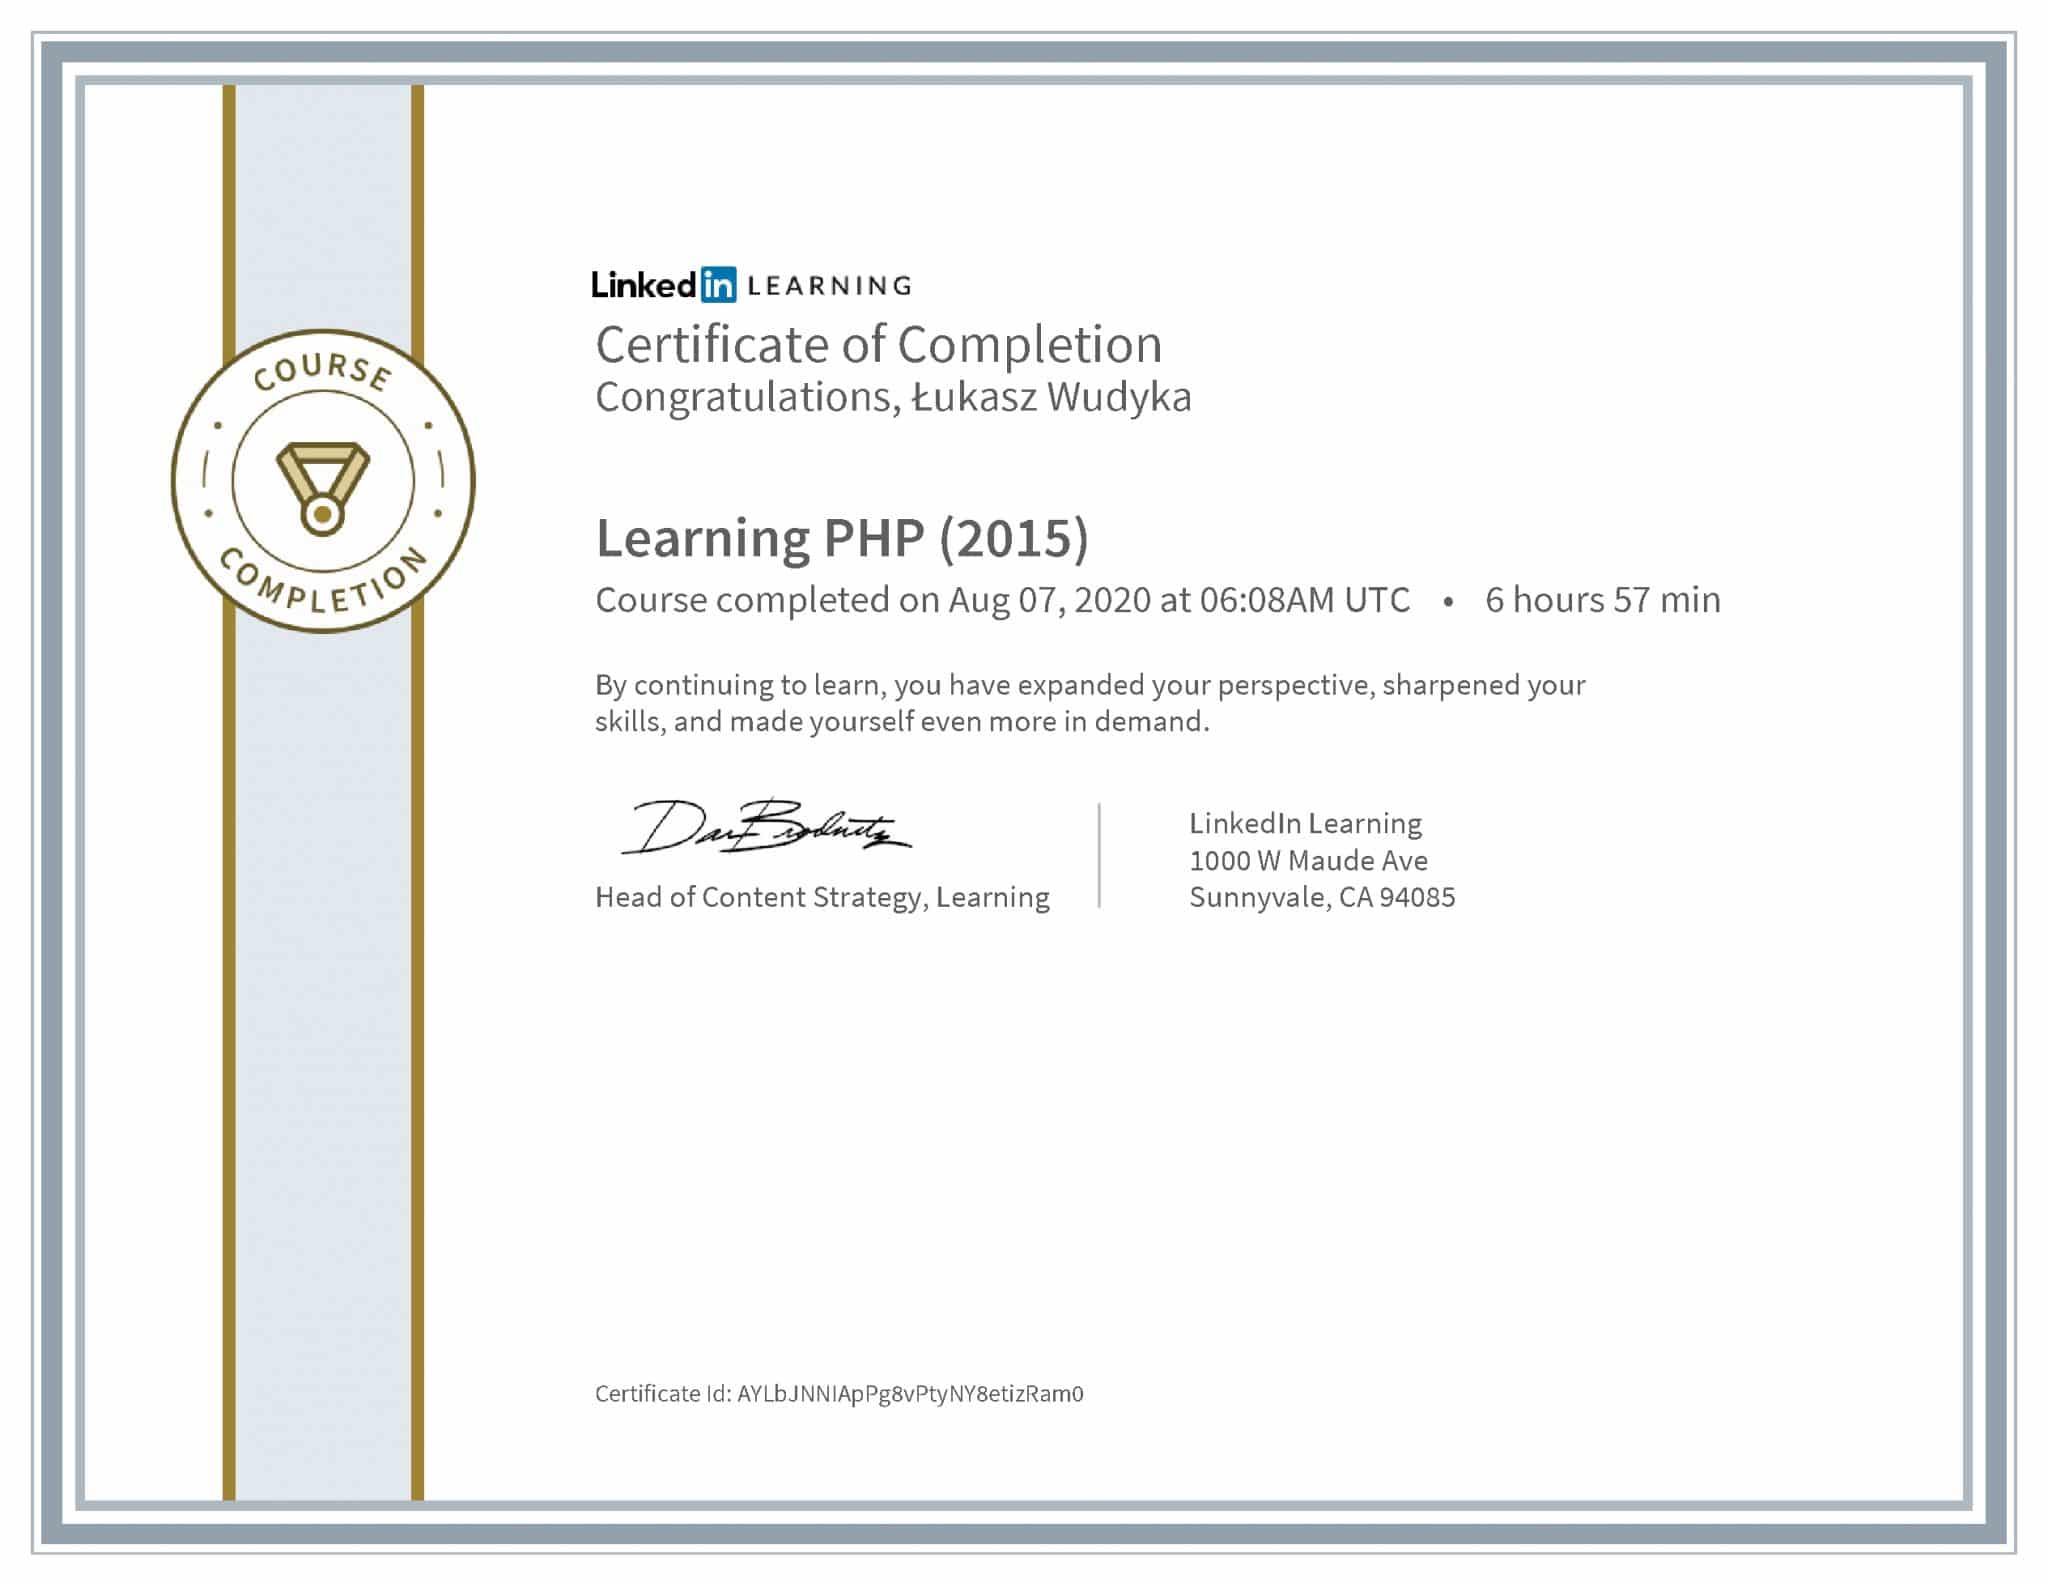 Łukasz Wudyka certyfikat LinkedIn Learning PHP (2015)